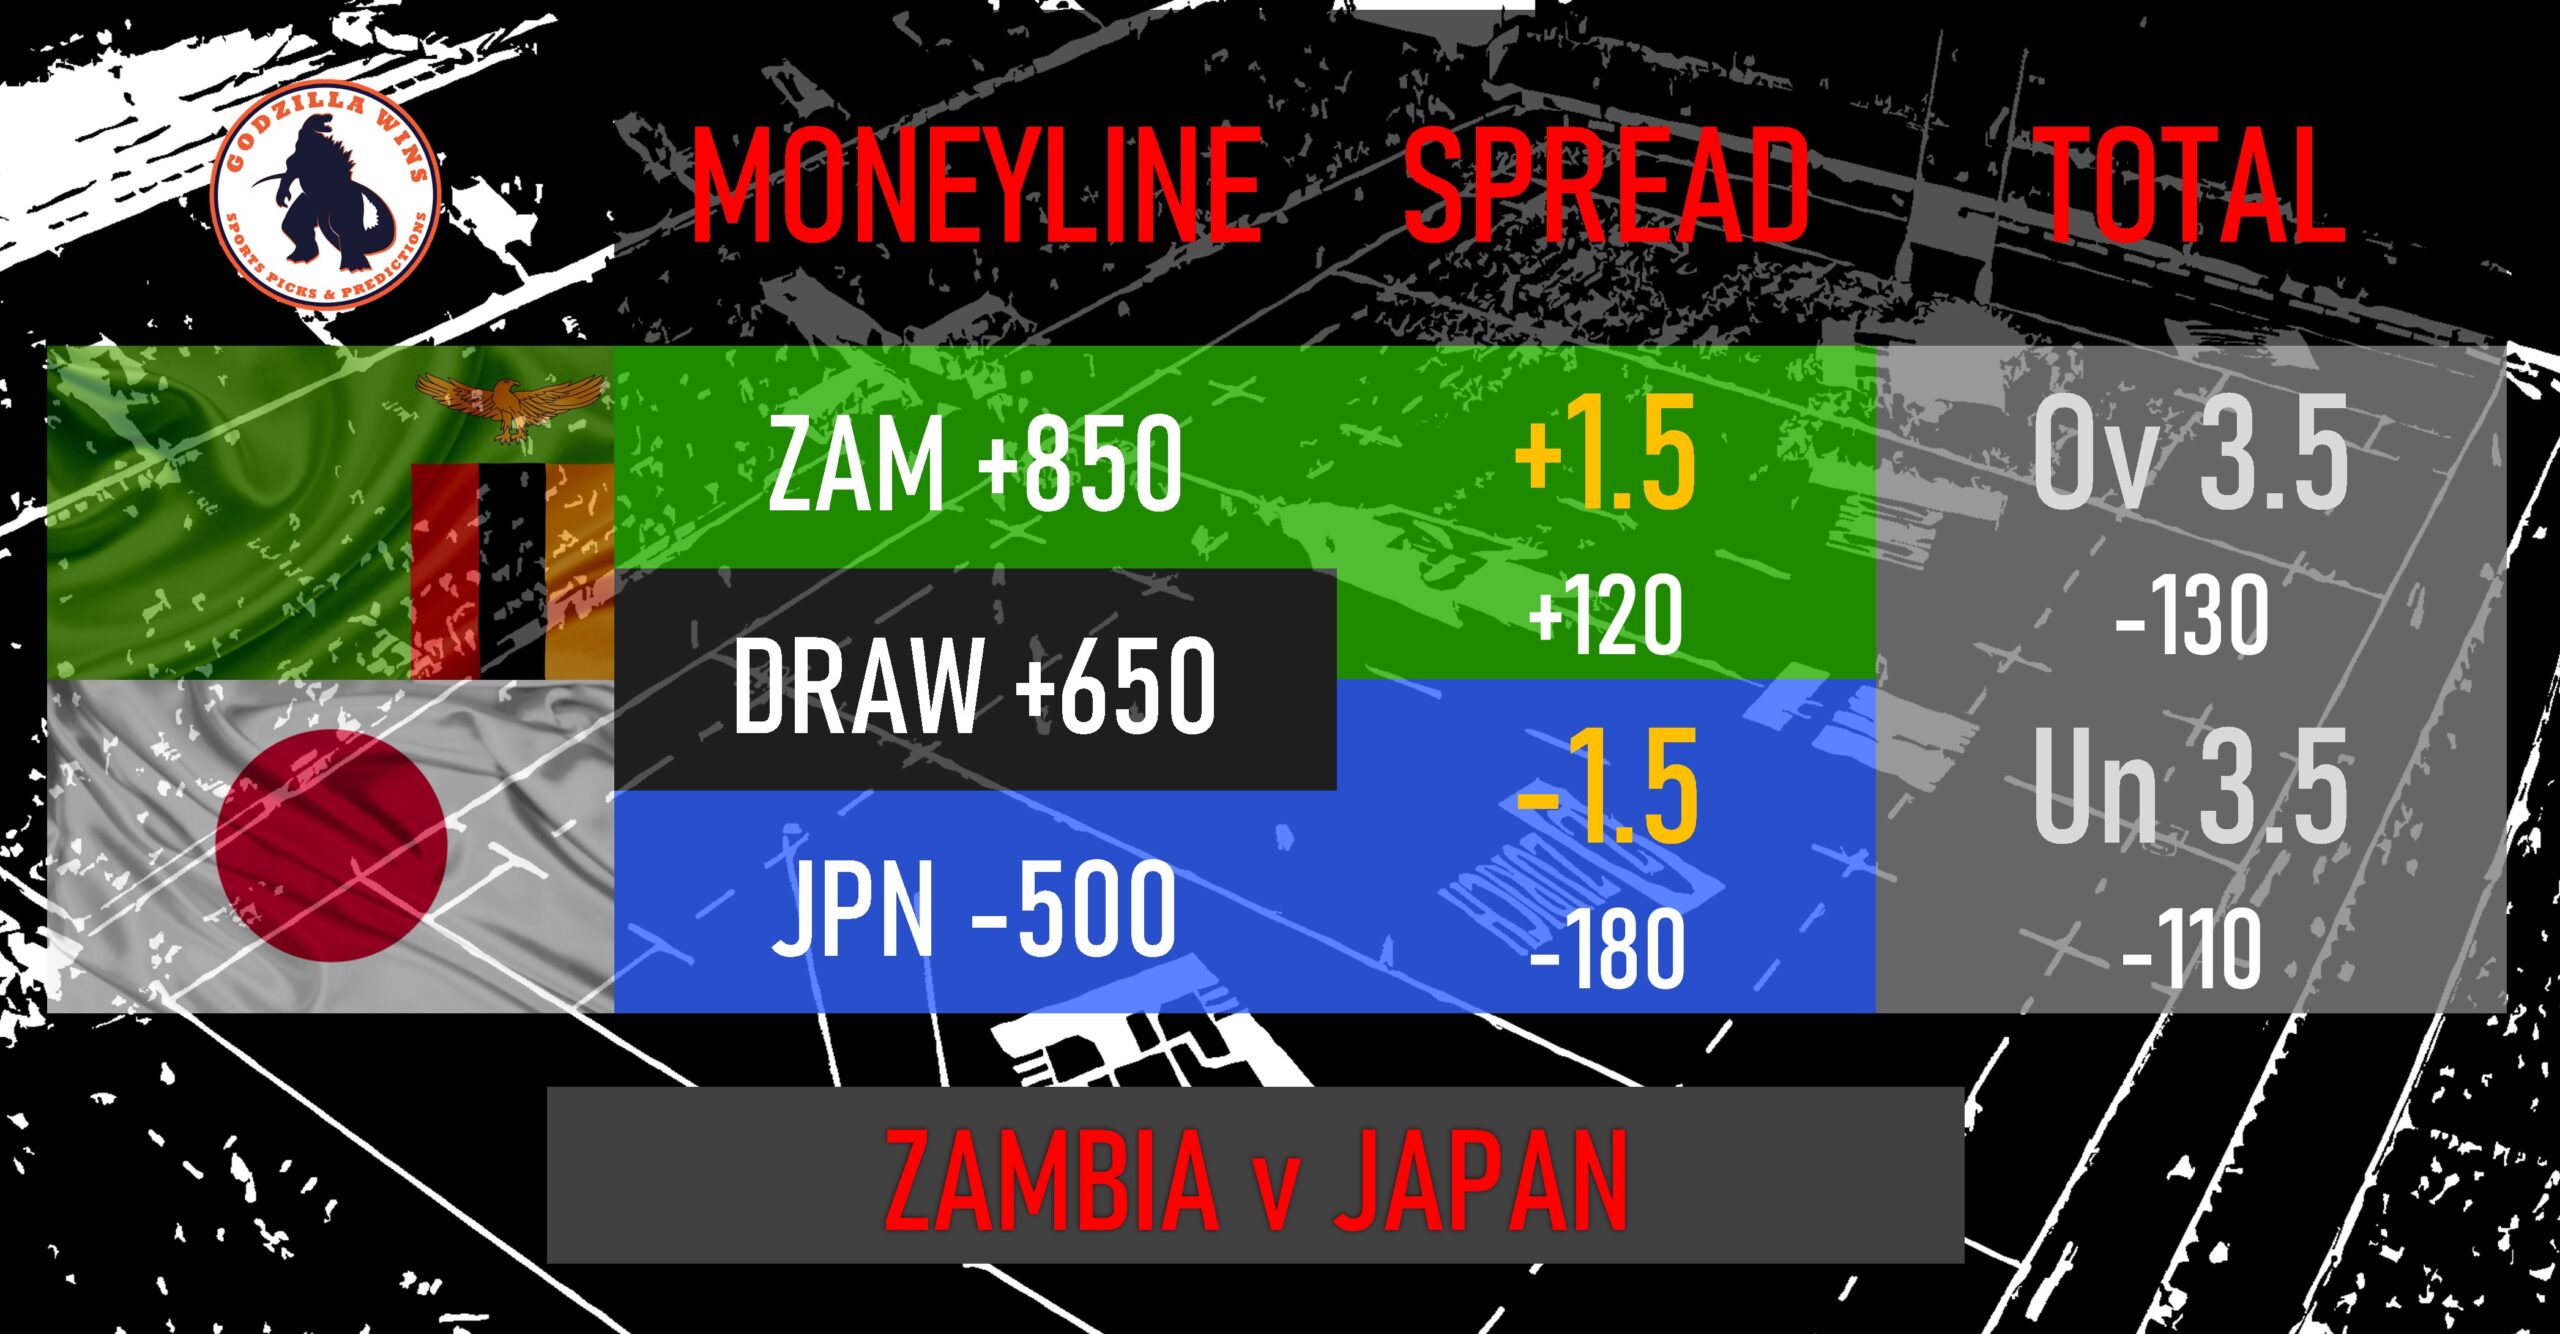 Zambia vs. Japan Women odds